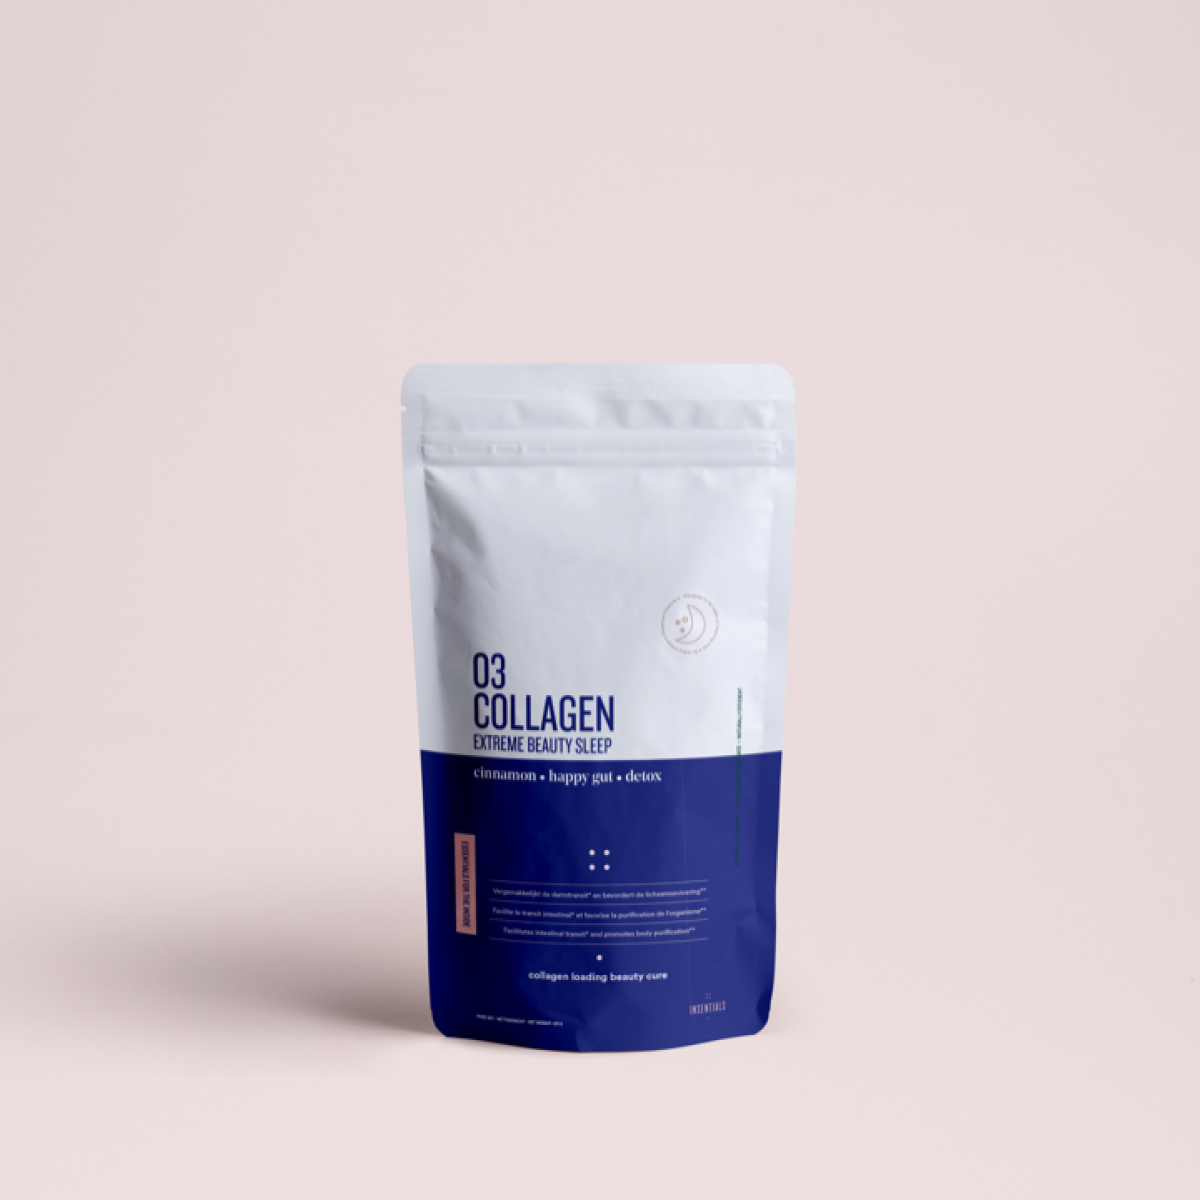 03 Insentials Collagen Beauty Sleep - 125g Refill bag